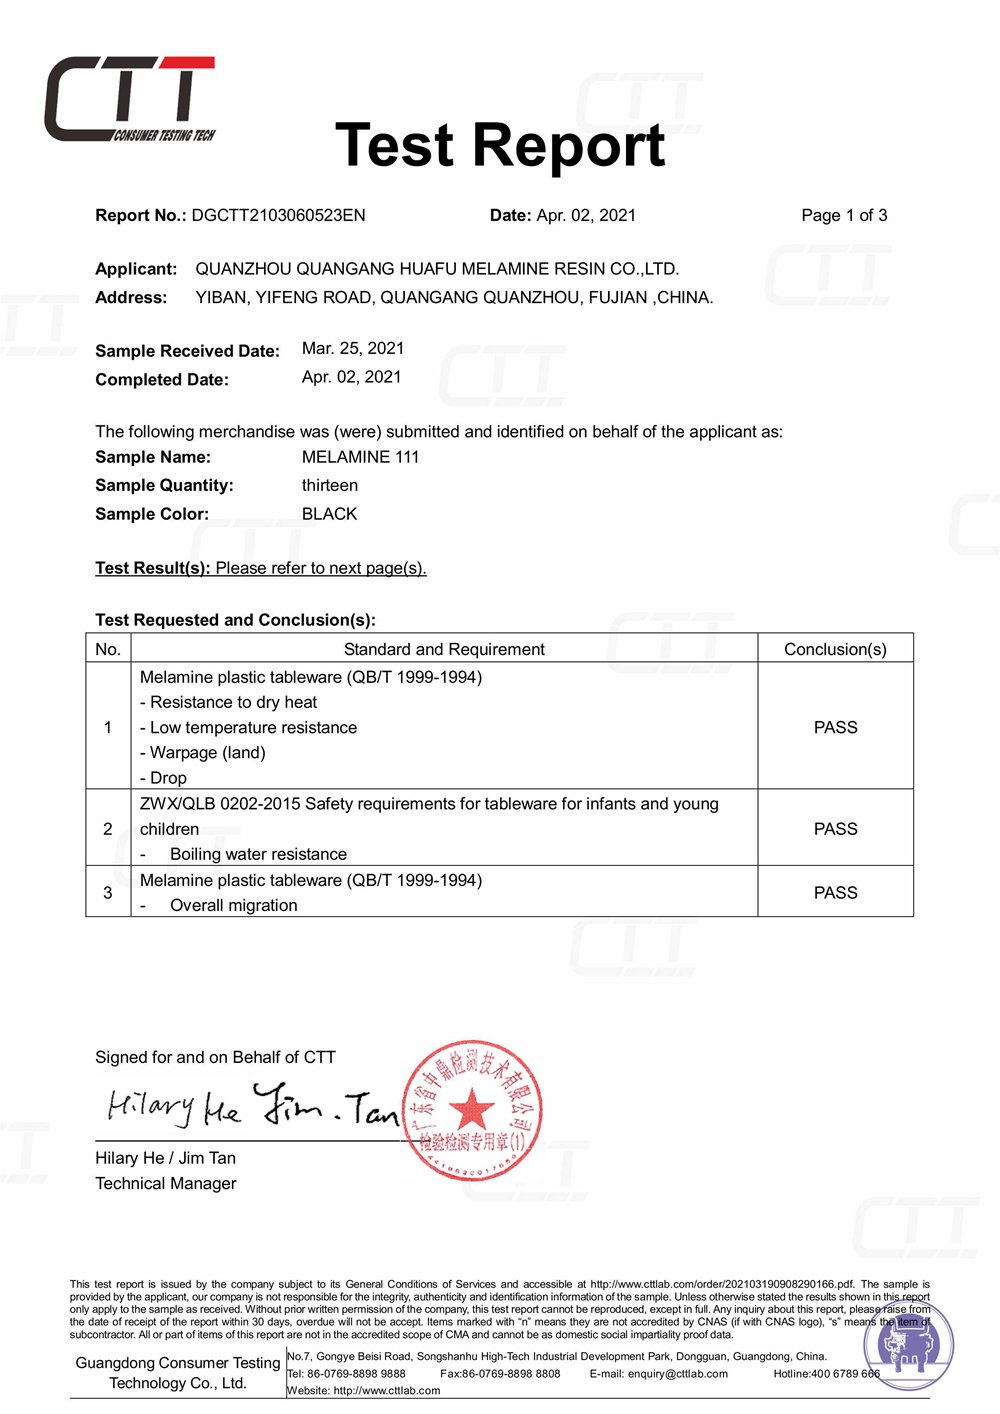 Huafu Chemicals：CTT Certificate in 2021